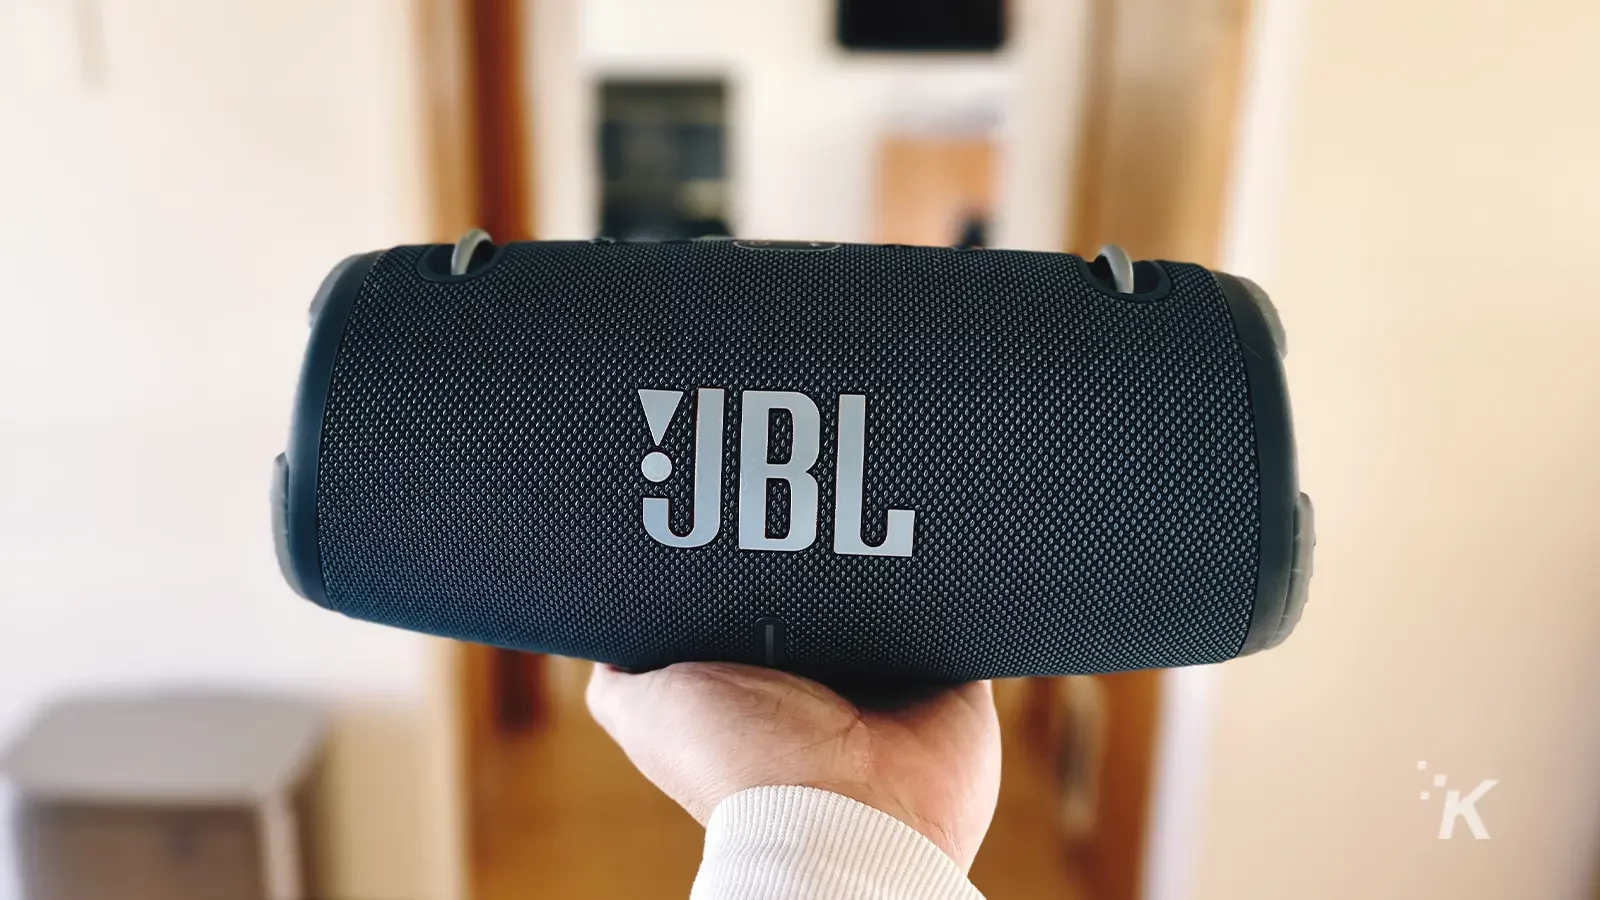 Speaker portabel JBL Xtreme 3 berwarna hitam di tangan